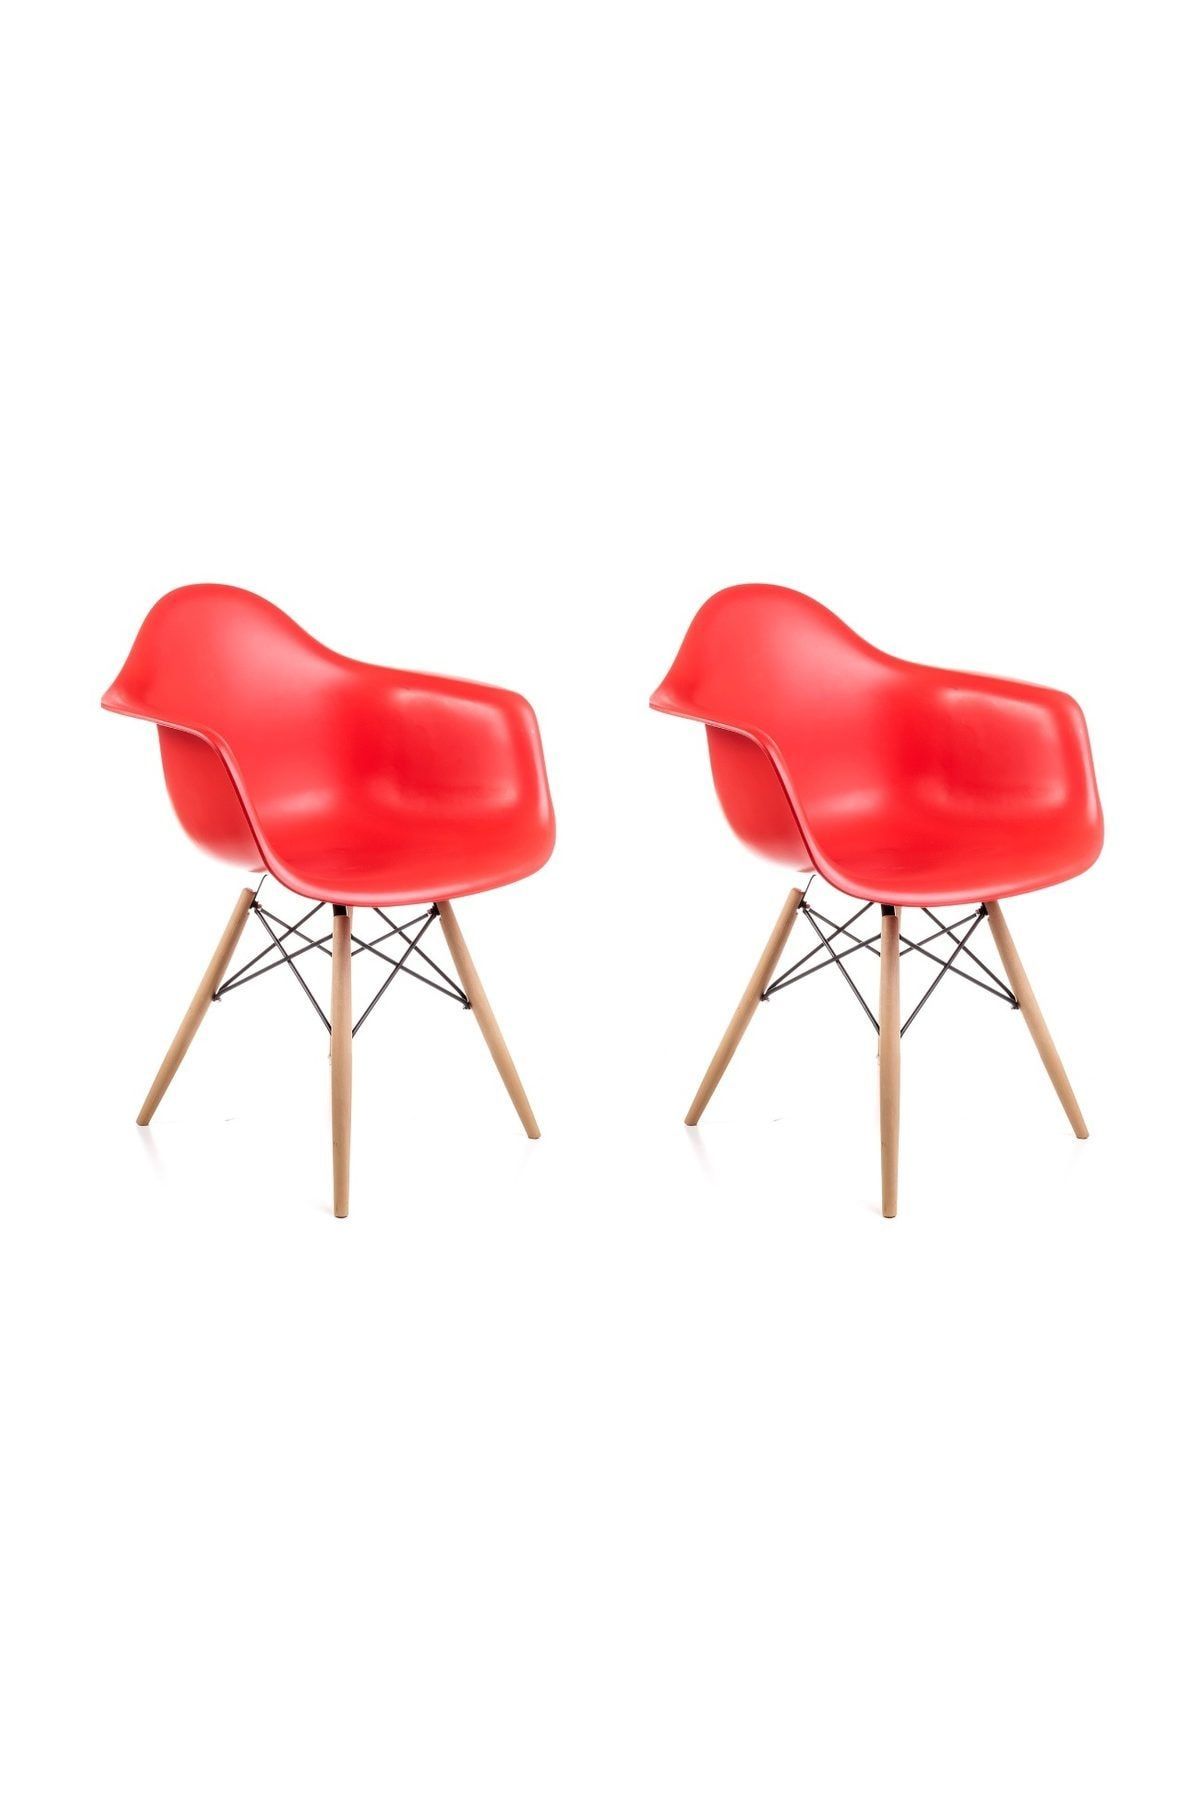 Dorcia Home Kolçaklı Kırmızı Eames Sandalye - 2 Adet - Cafe Balkon Mutfak Sandalyesi